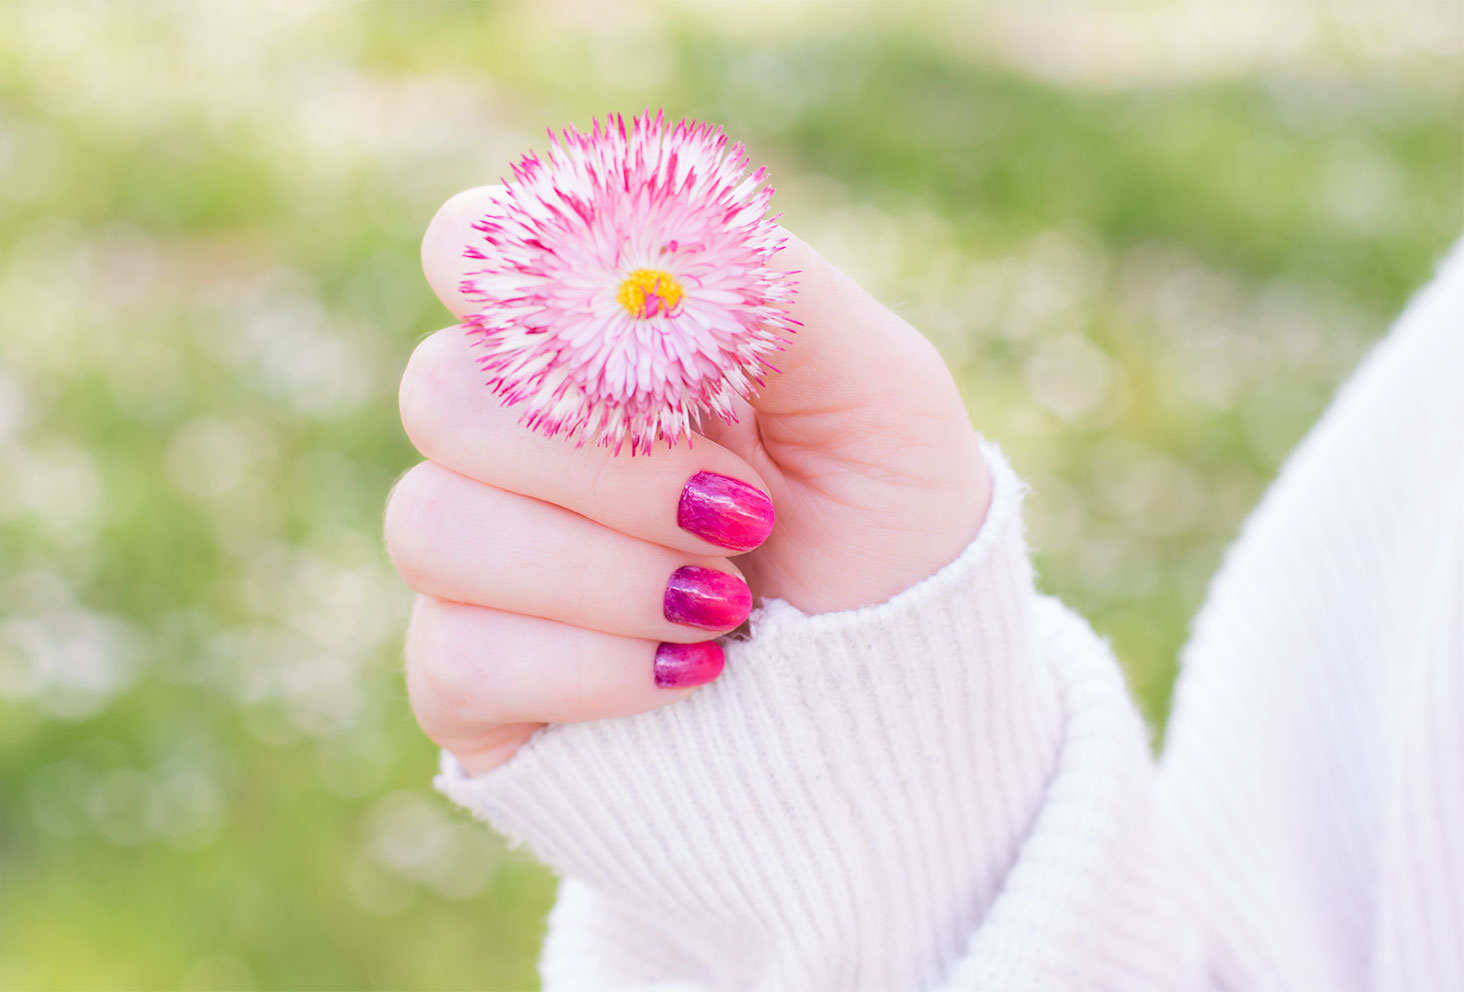 Résultat du nailart dégradé réalisé avec les vernis SO'BiO étic une fleur dégradée rose et blanche dans la main de la même couleur